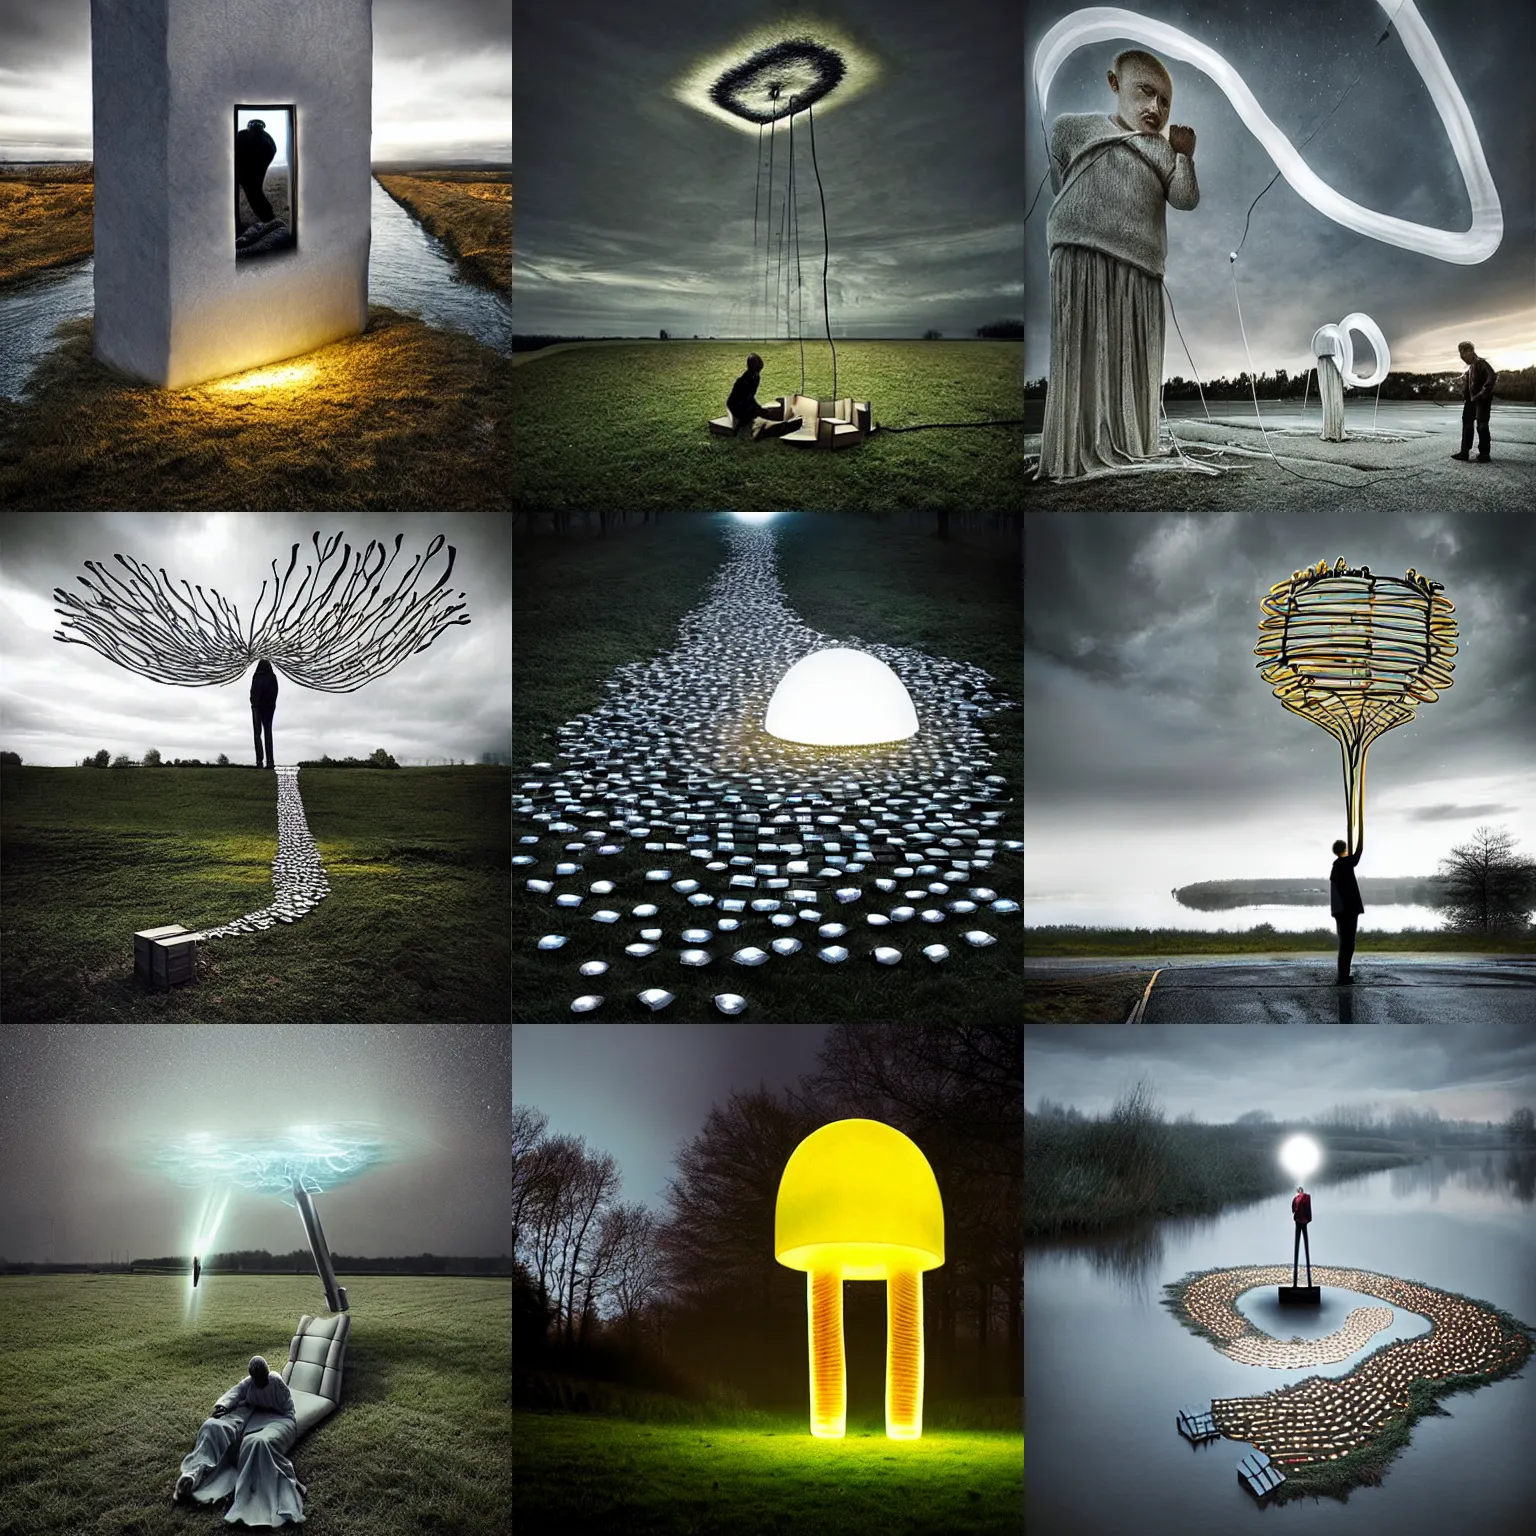 Prompt: light sculpture by erik johansson, do androids dream